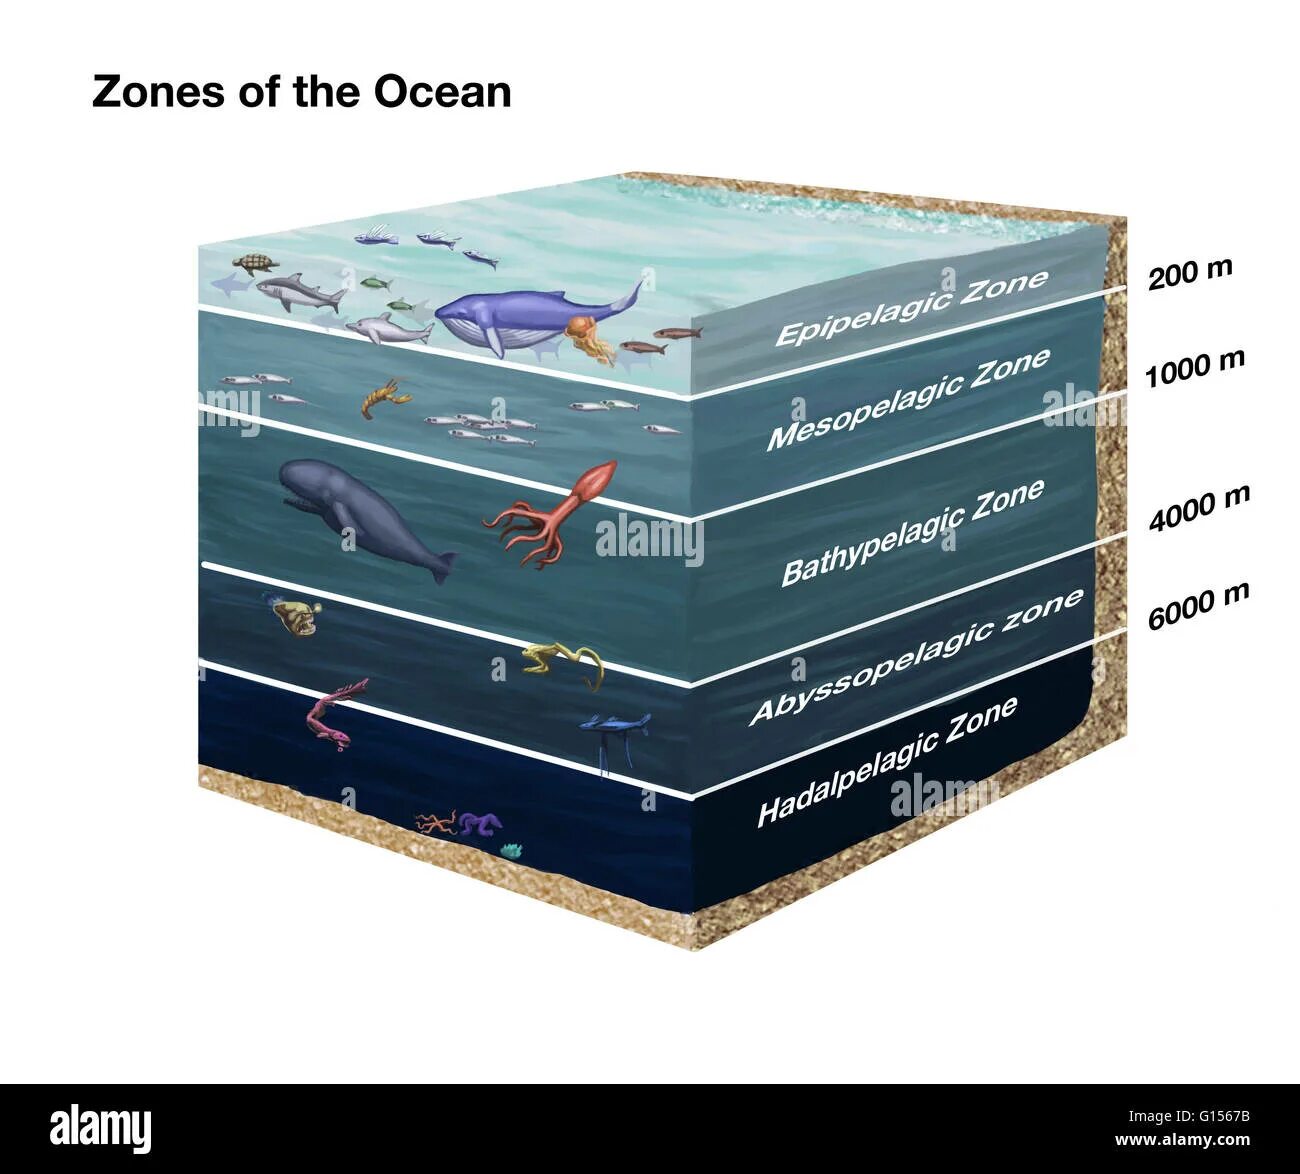 5 слоев океана. Зоны океана. Слои океана. Абиссальная зона. Хадальный слой океана.